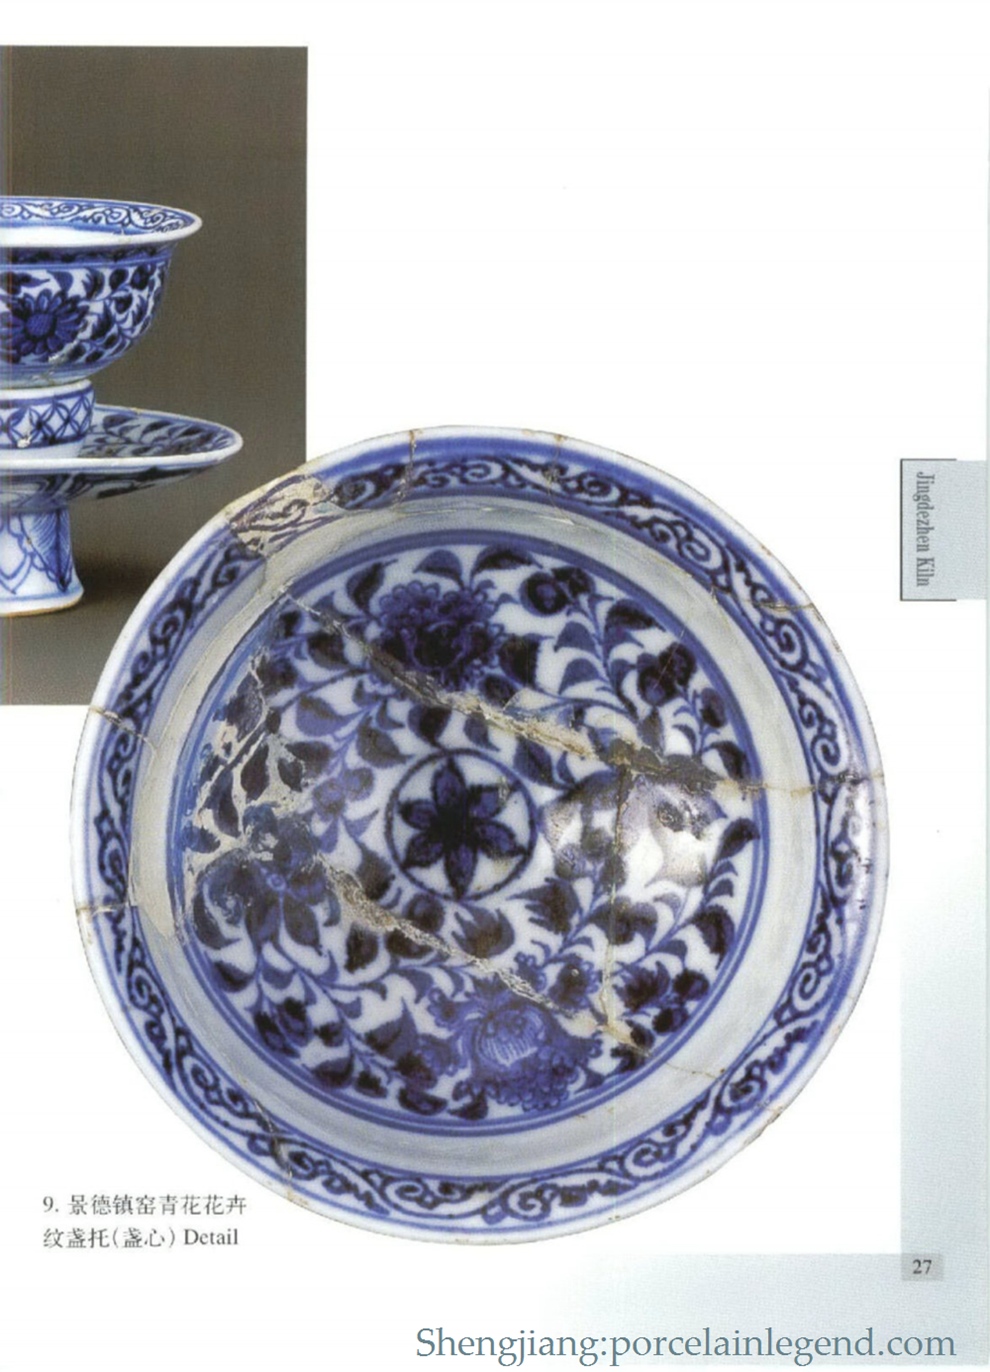 9. Jingdezhen kiln blue and white flower 盏 盏 (盏心) Detail